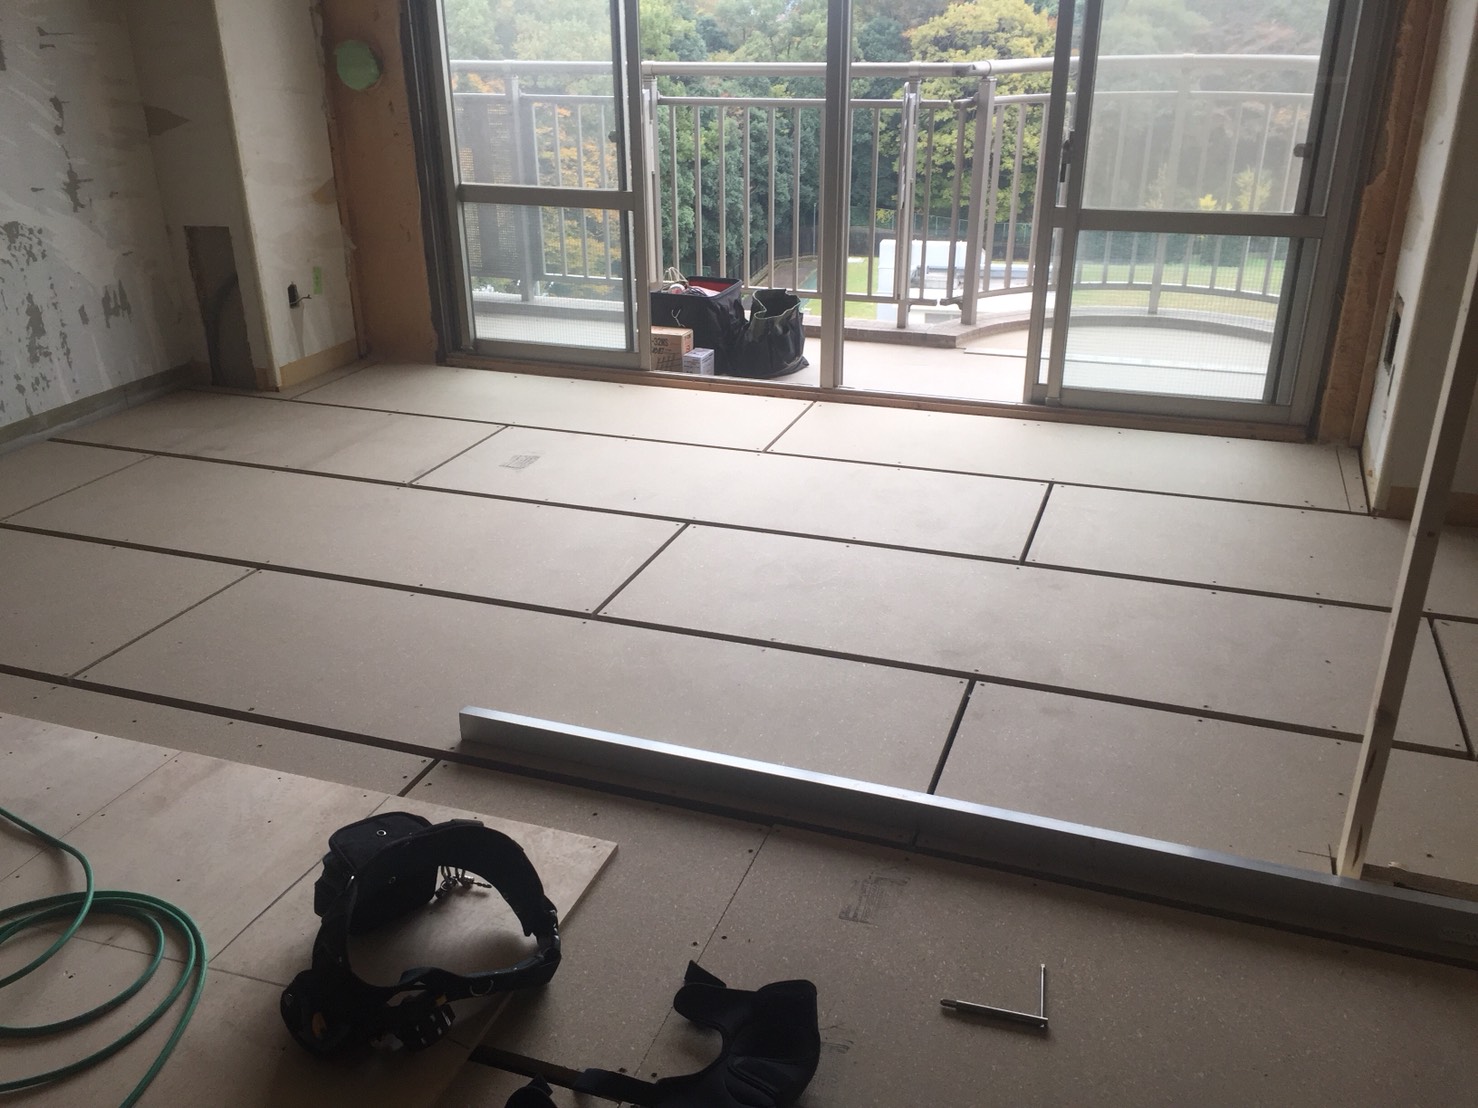 東京都八王子市の老人ホームにて、置床工事を行いました。